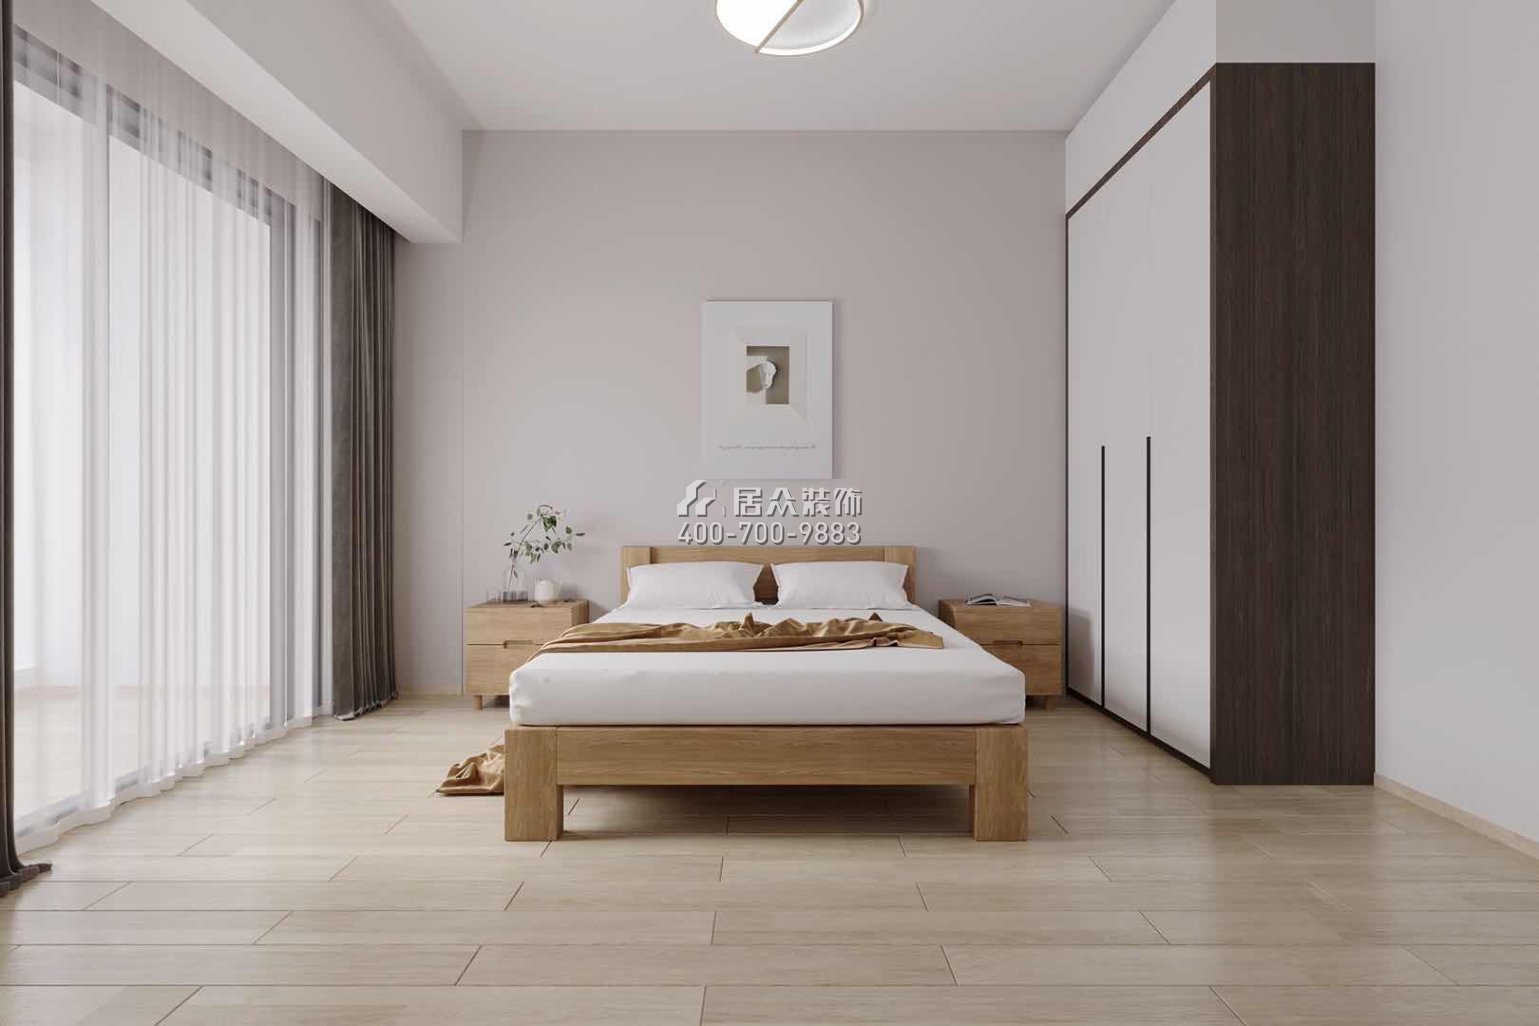 绿景红树湾壹号250平方米现代简约风格平层户型卧室装修效果图